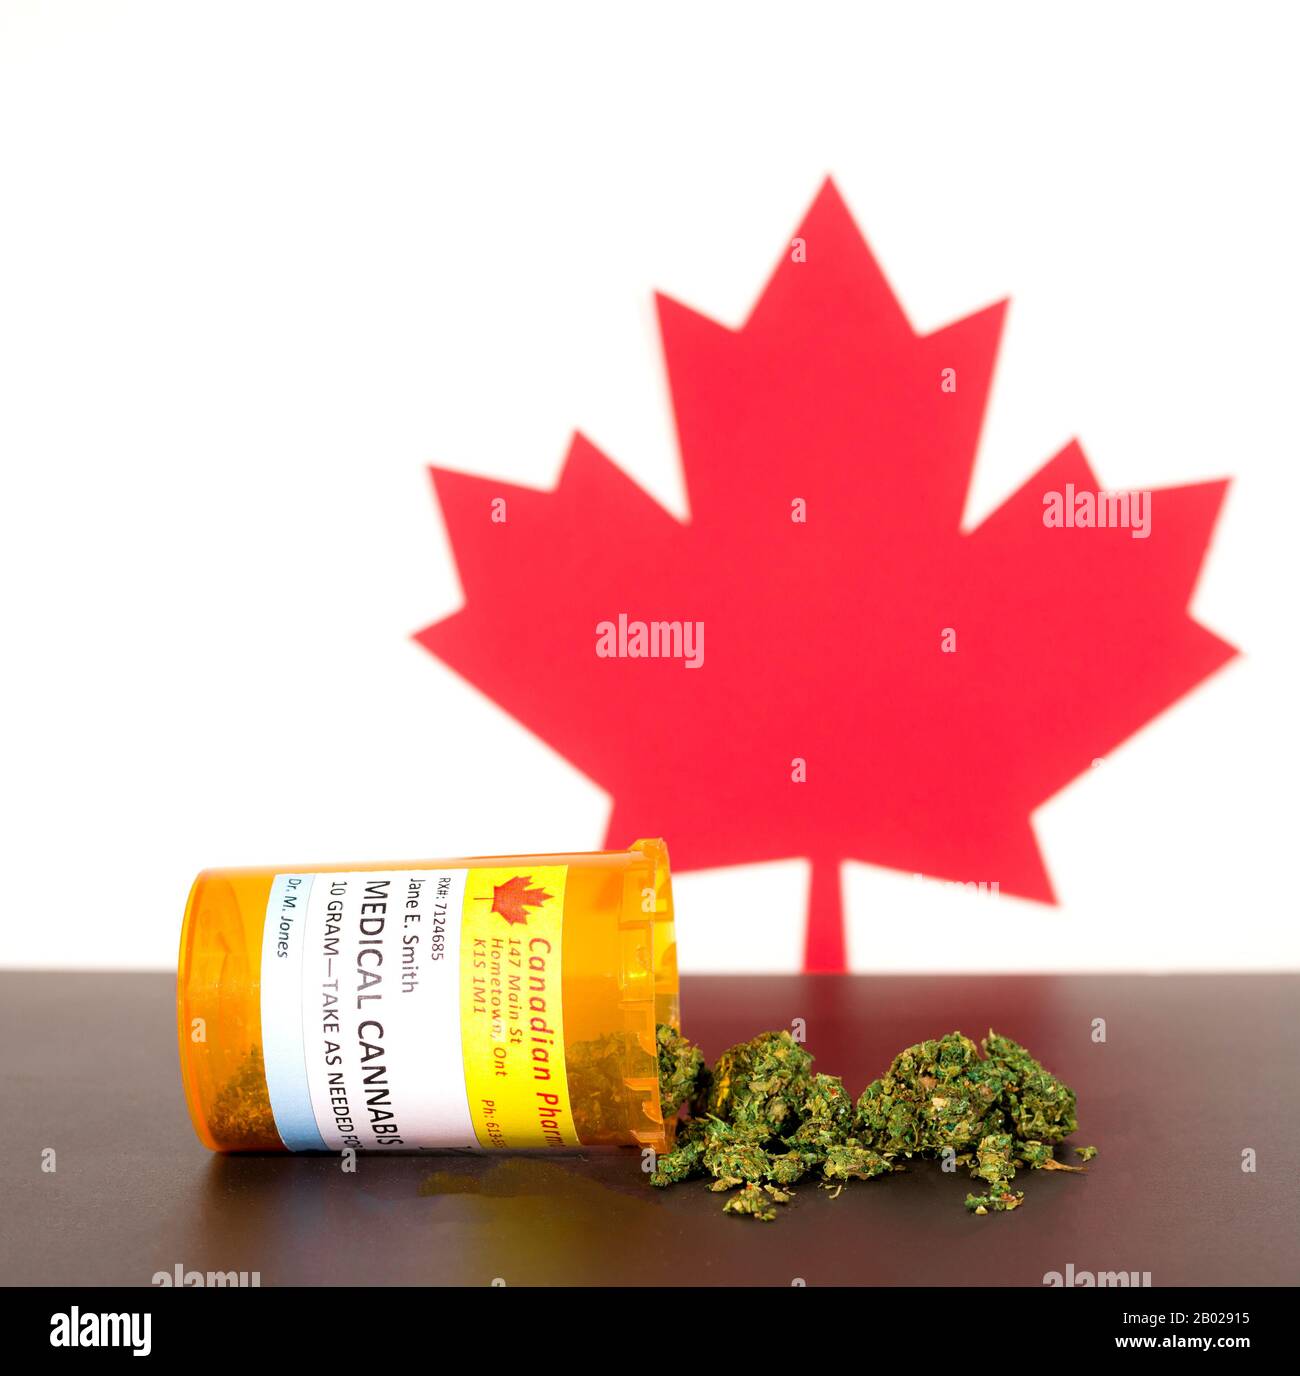 Cannabis in Kanada. Die medizinische Verwendung von Cannabis Verschütten von einer Verordnung Flasche auf einem Tisch, mit einem Kanadischen maple leaf hinter sich. Marihuana Knospen auf den Tisch. Stockfoto